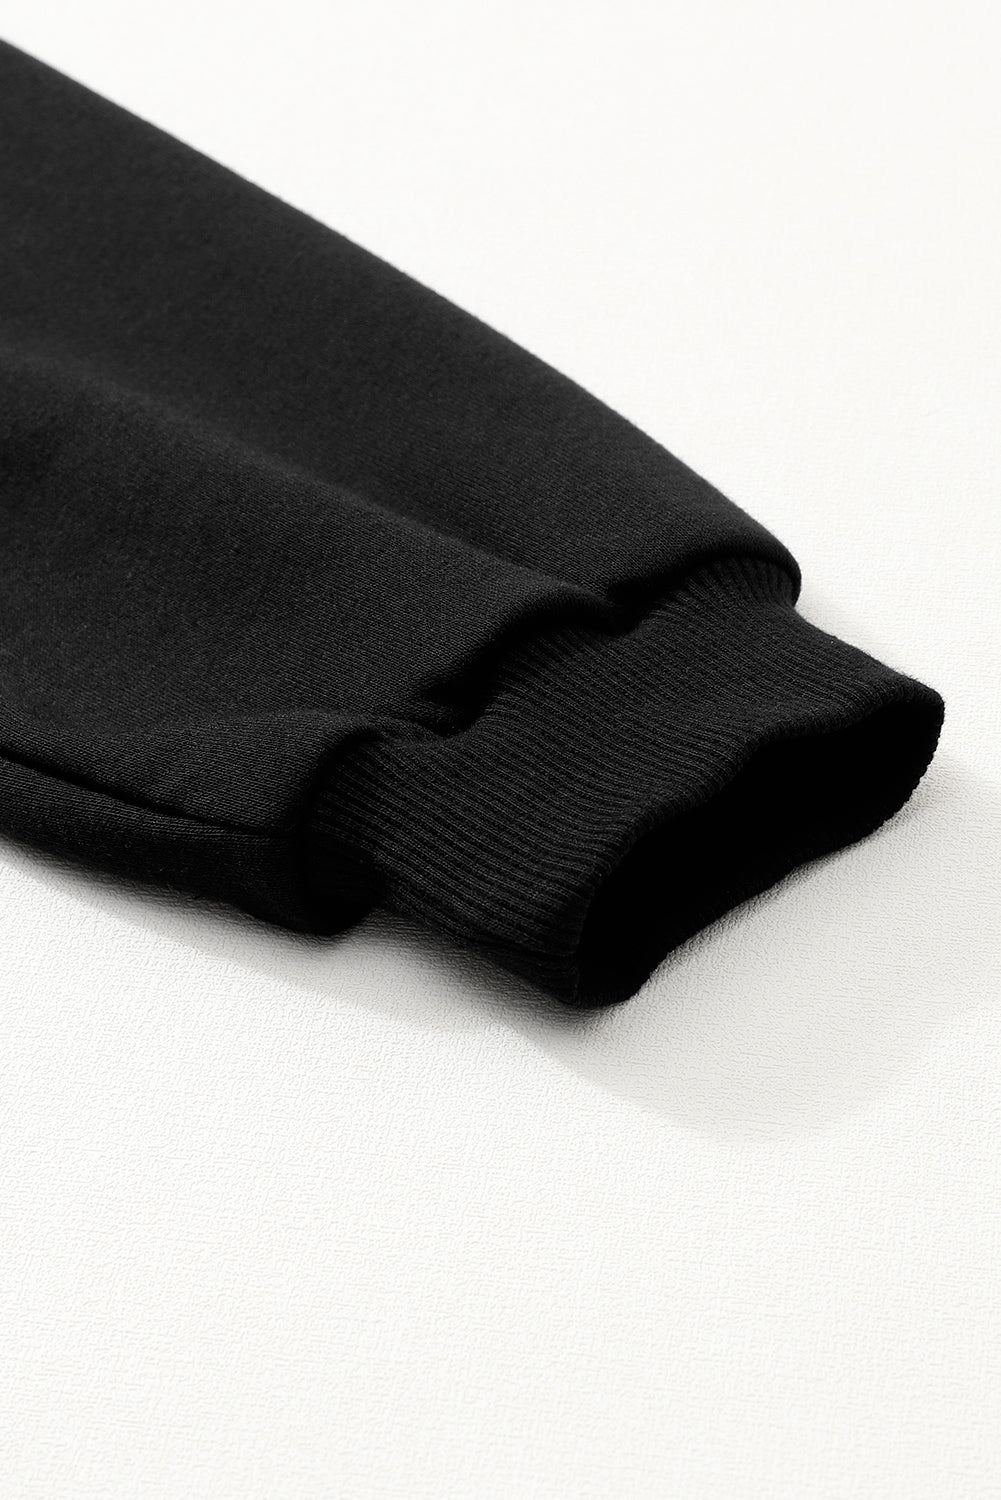 Mini abito nero con maniche a sbuffo e orlo arricciato